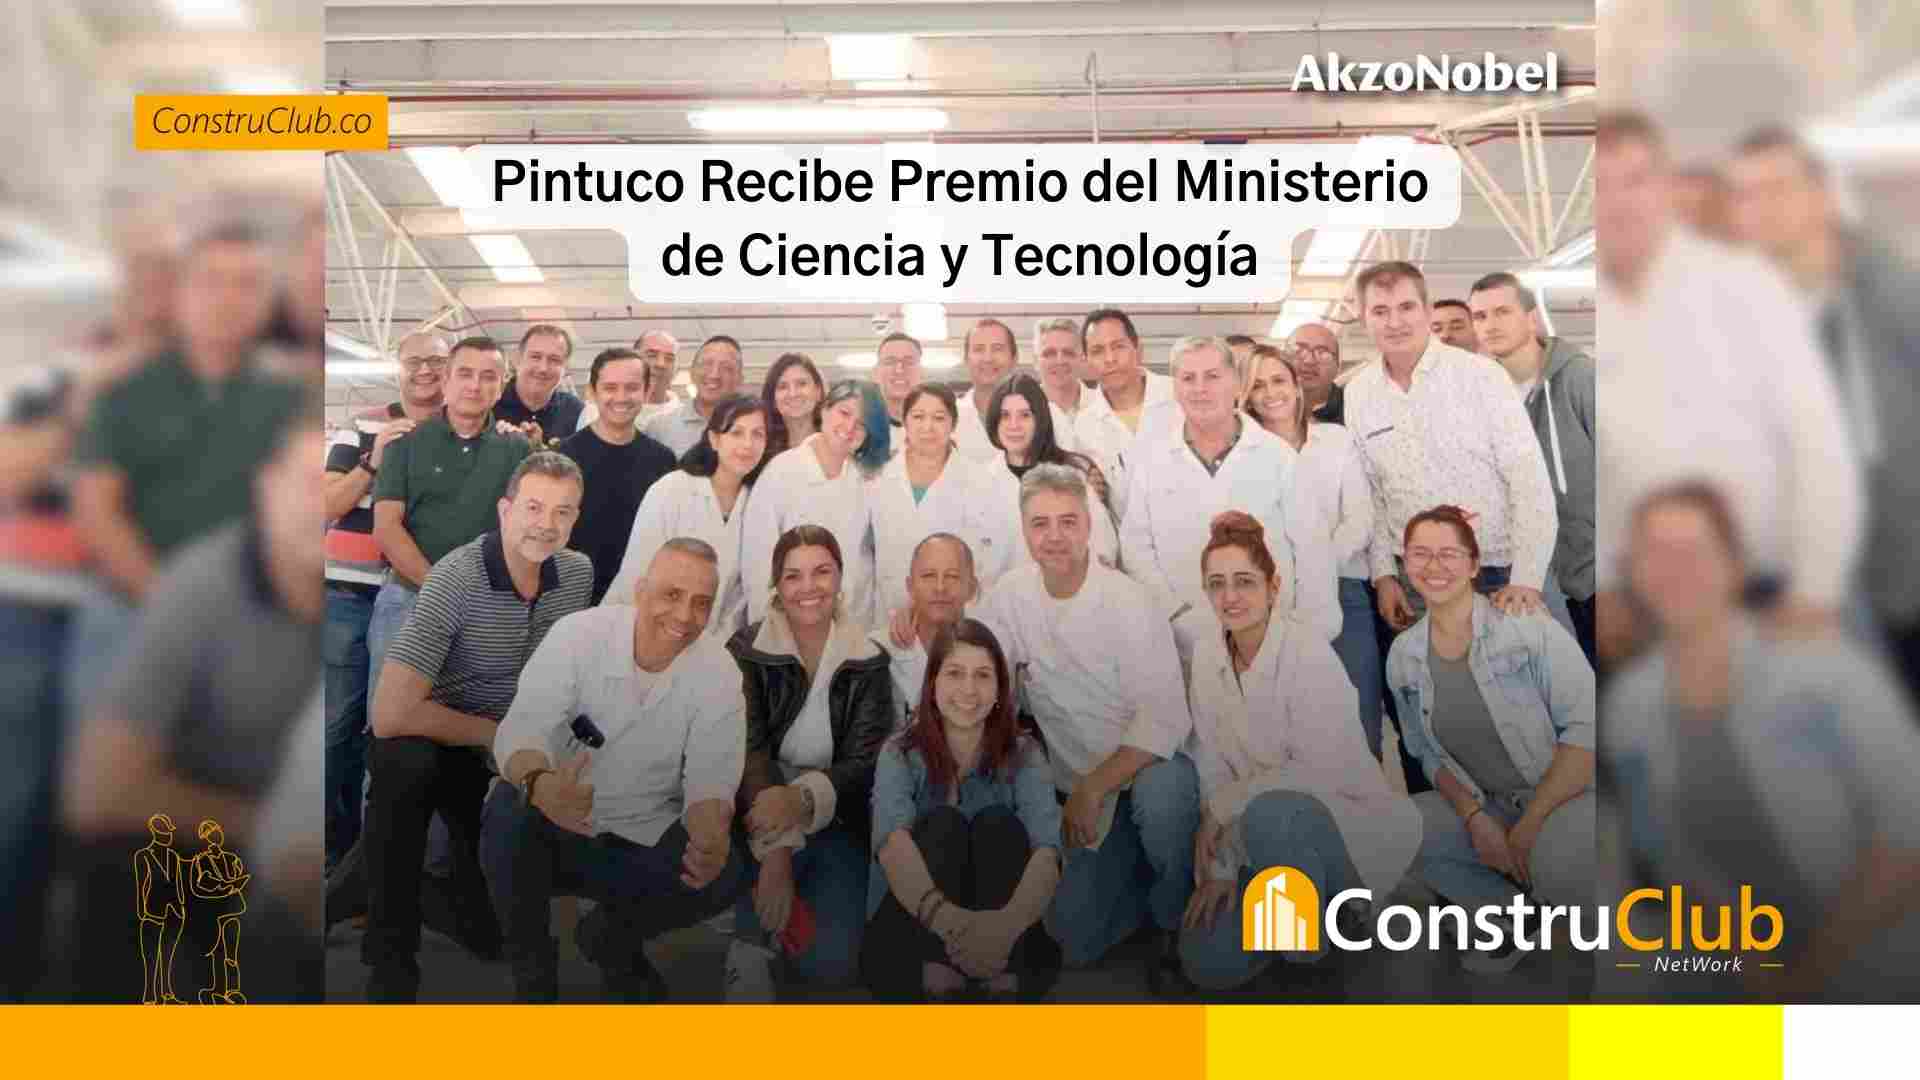 Pintuco Recibe Premio del Ministerio de Ciencia y Tecnología